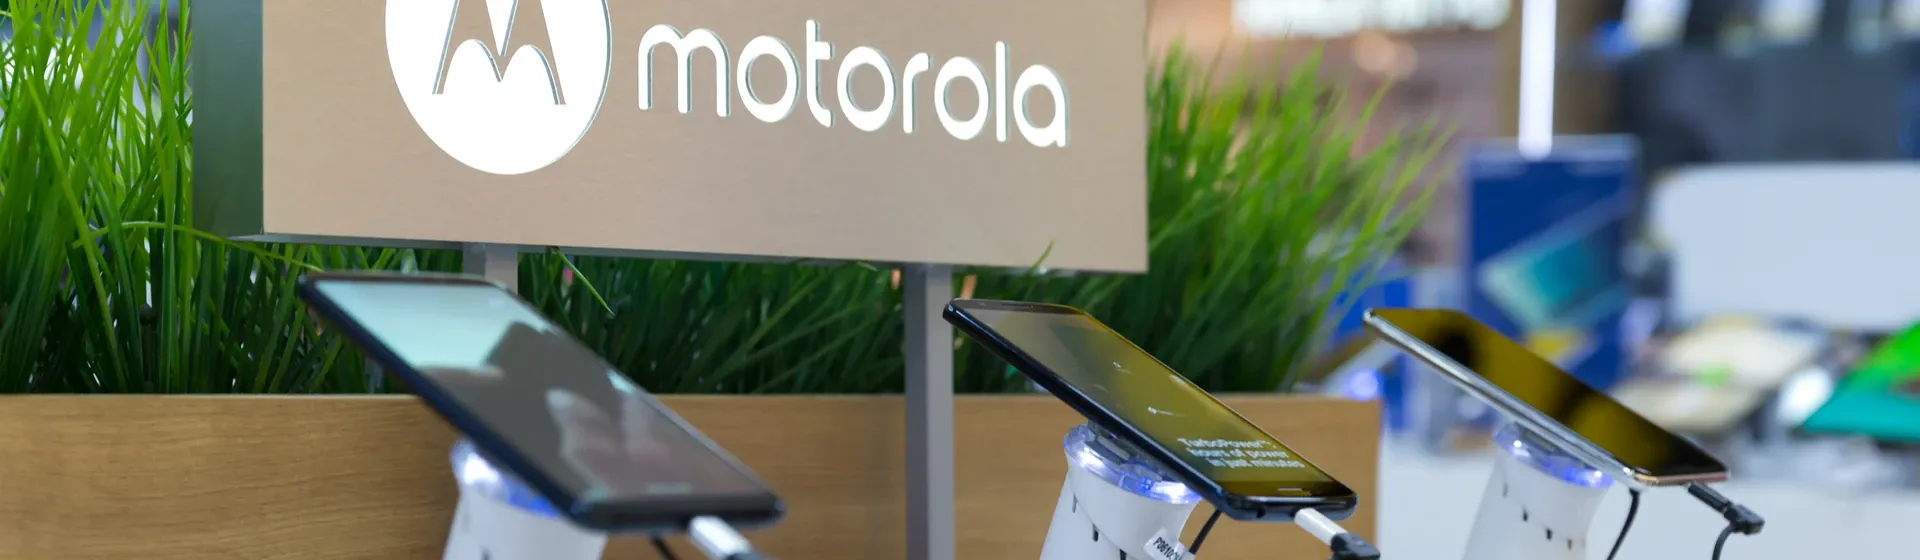 Mesa com três modelos de celular Motorola em uma loja